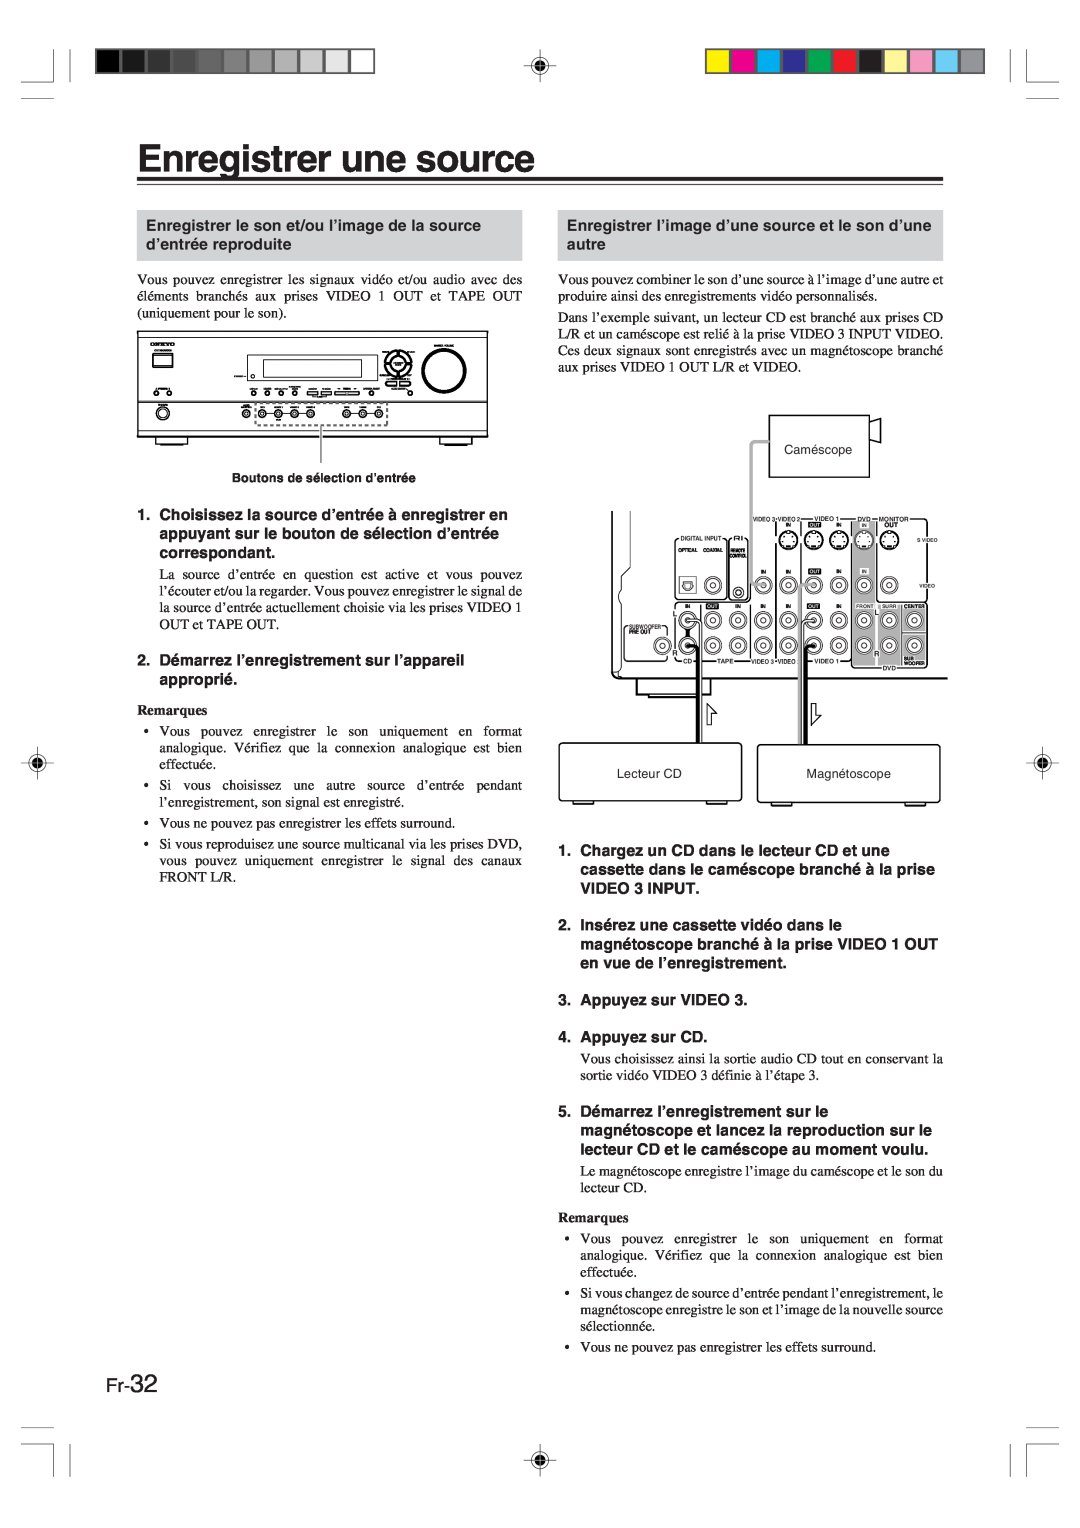 Onkyo HT-R420 manual Enregistrer une source, Fr-32 